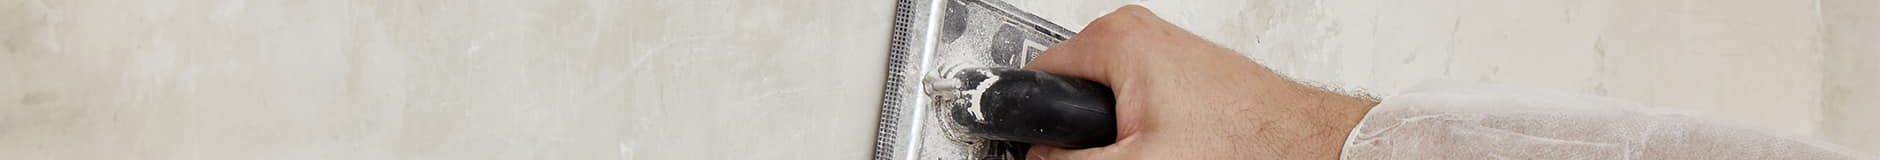 Toepassing van kant-en-klaar microcement op een niet-begaanbaar oppervlak met een plamuurmes